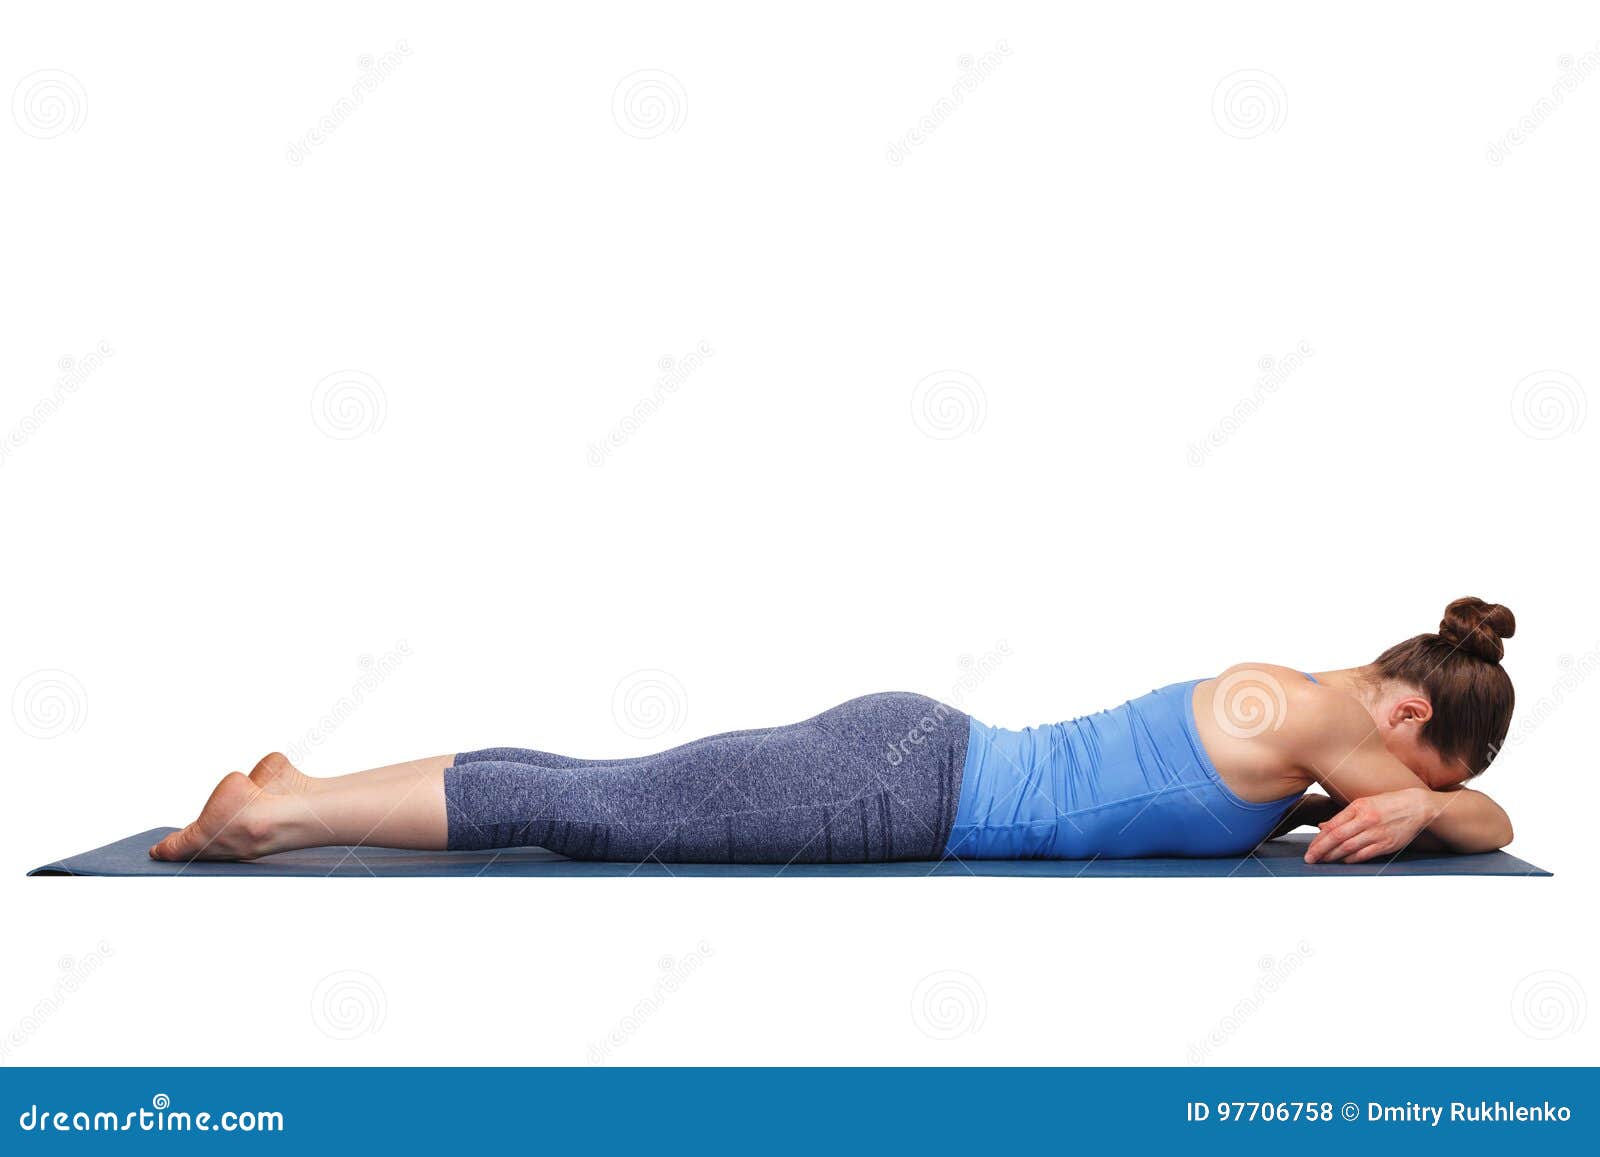 मकरासन के अभ्यास से शरीर को मिलते हैं ये 8 फायदे, योग एक्सपर्ट से जानें  करने का तरीका | makarasana yoga benefits and steps to do it in hindi |  OnlyMyHealth